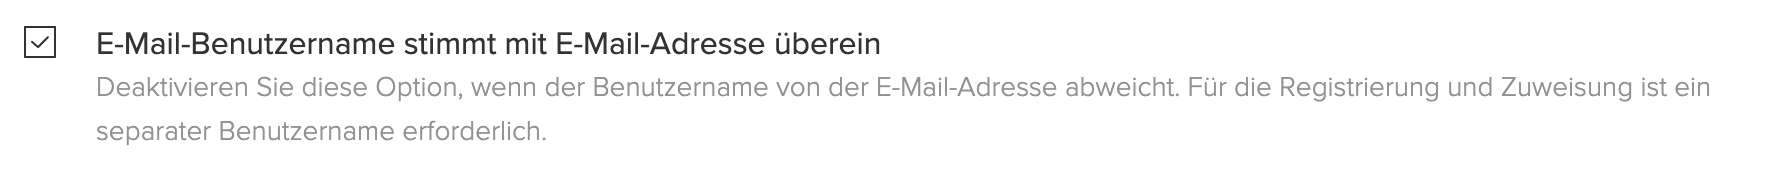 Screenshot, der zeigt, dass der E-Mail-Benutzername mit der E-Mail-Adresse übereinstimmt.